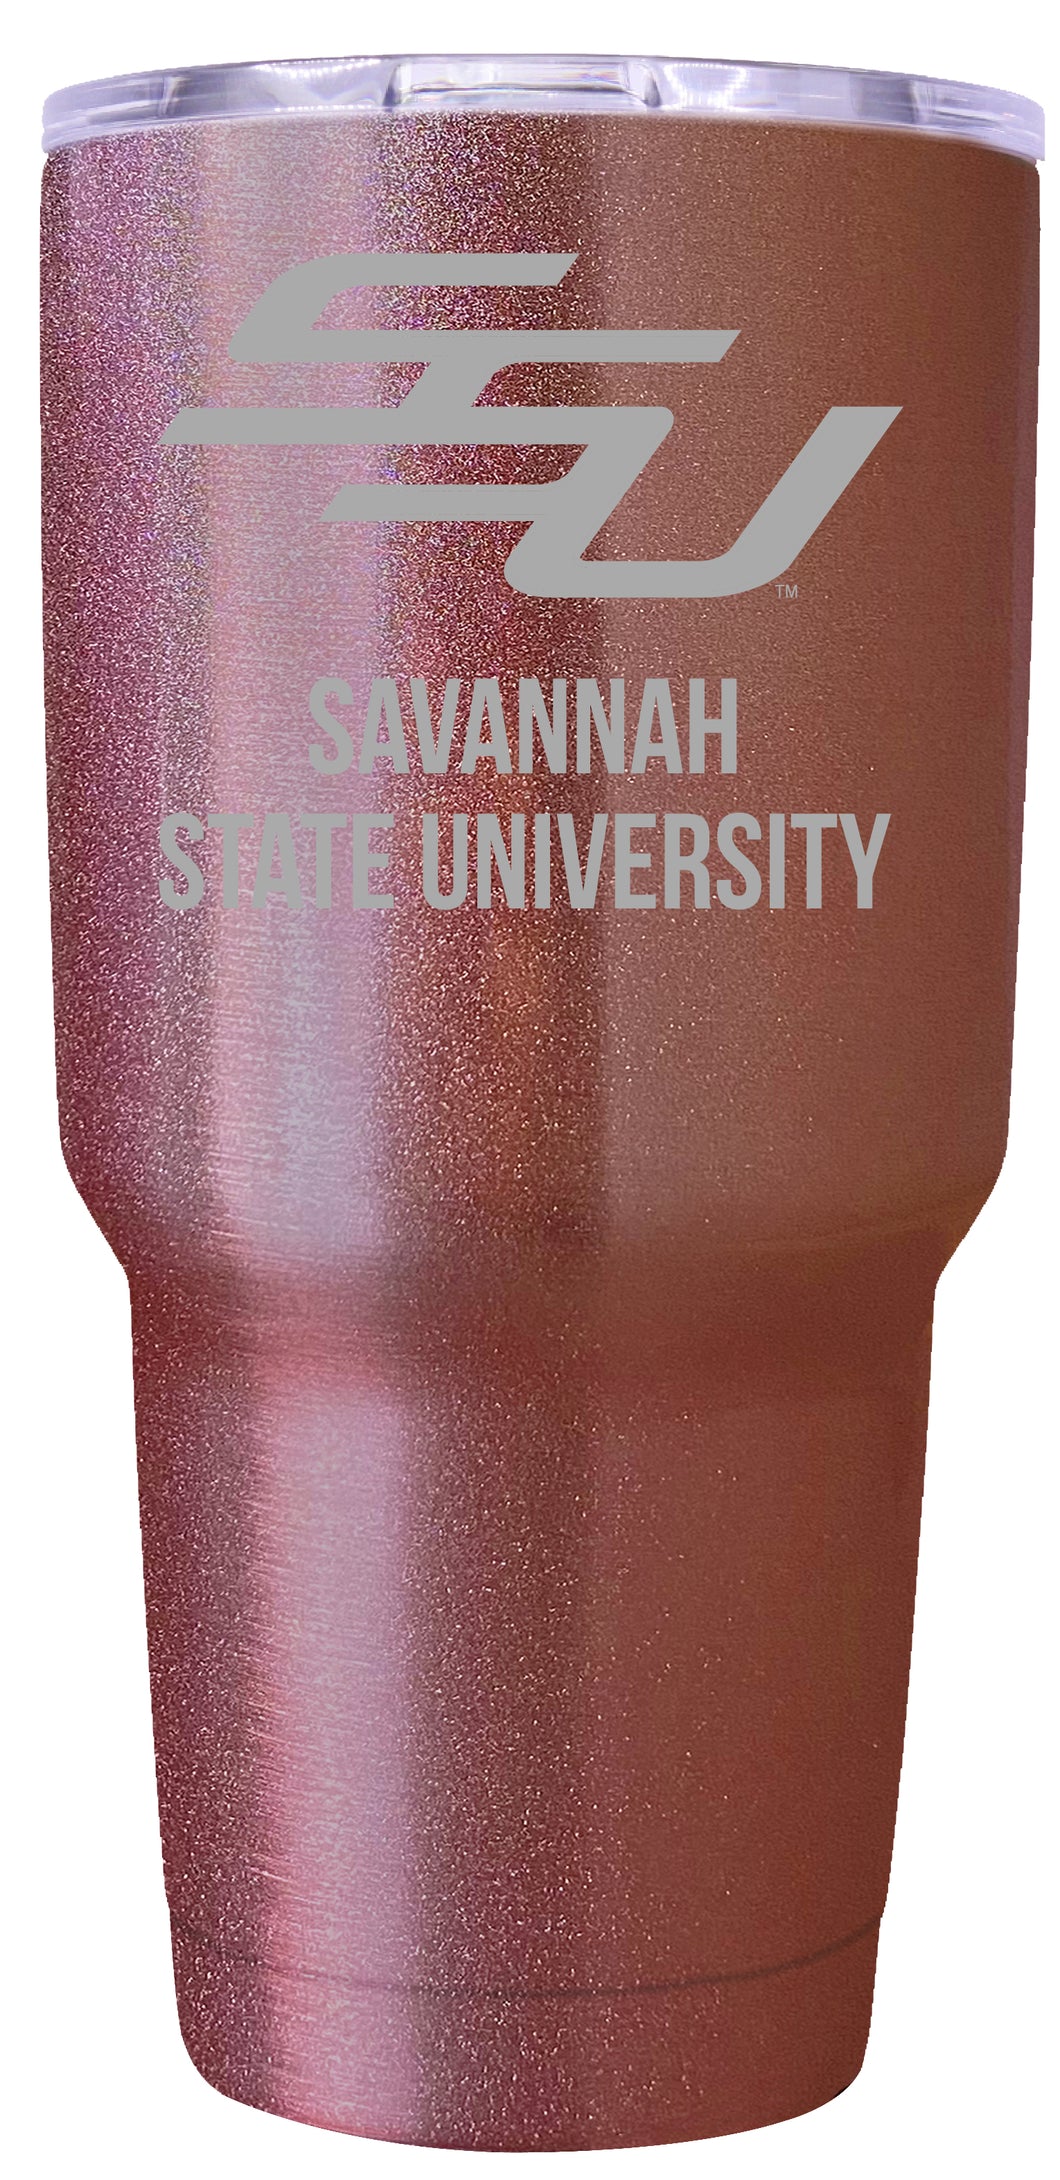 Savannah State University Premium Laser Engraved Tumbler - 24oz Stainless Steel Insulated Mug Rose Gold